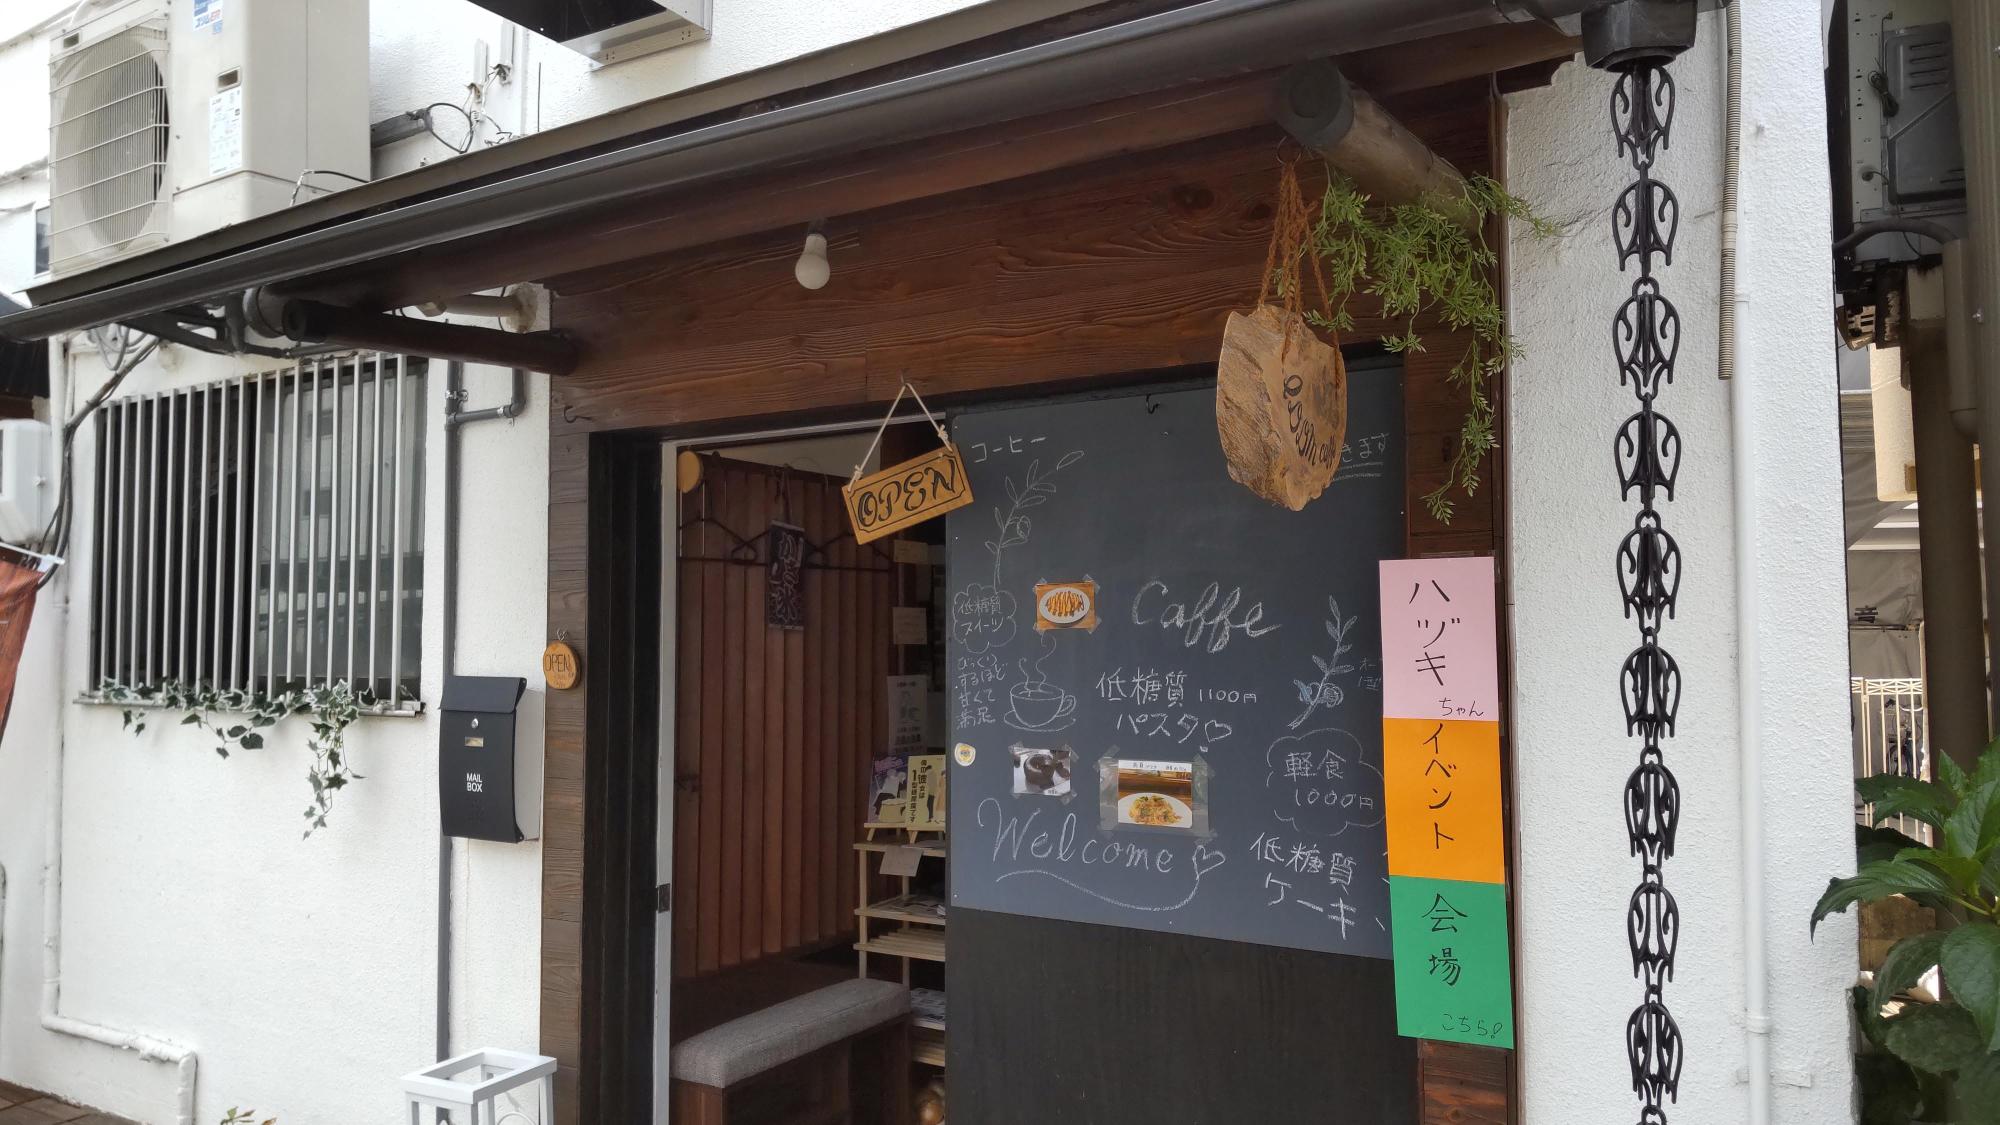 会場のIDDM caffe@兵庫区